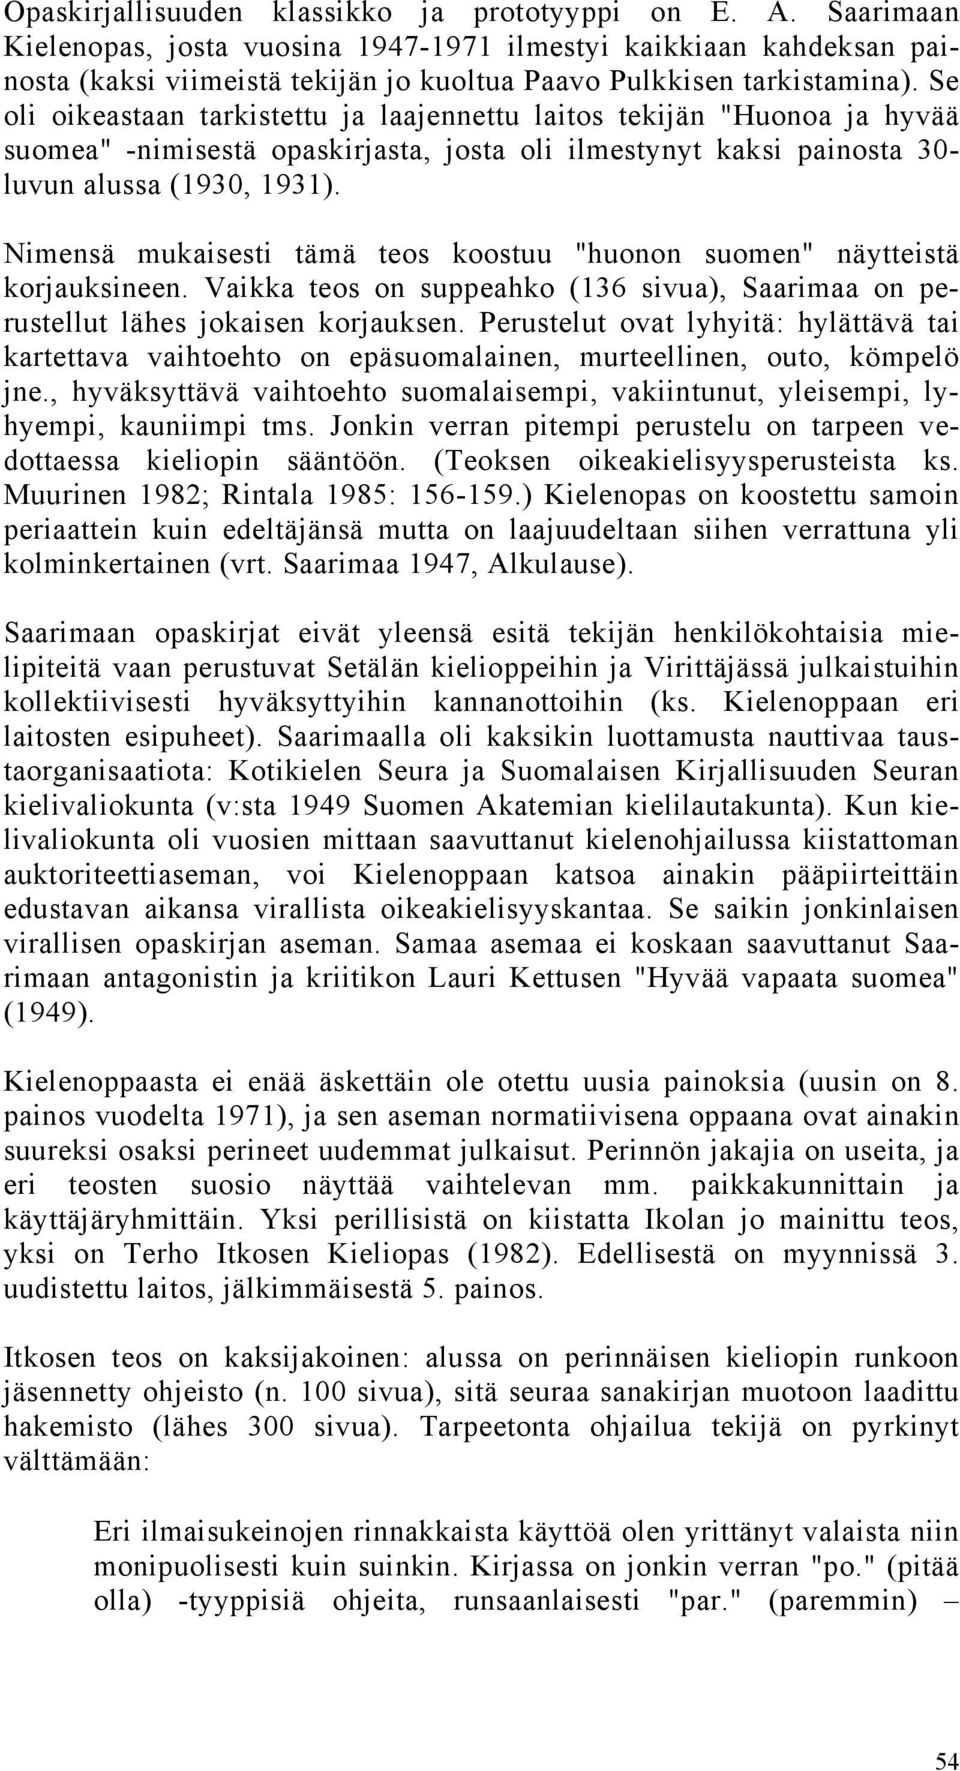 Se oli oikeastaan tarkistettu ja laajennettu laitos tekijän "Huonoa ja hyvää suomea" -nimisestä opaskirjasta, josta oli ilmestynyt kaksi painosta 30- luvun alussa (1930, 1931).